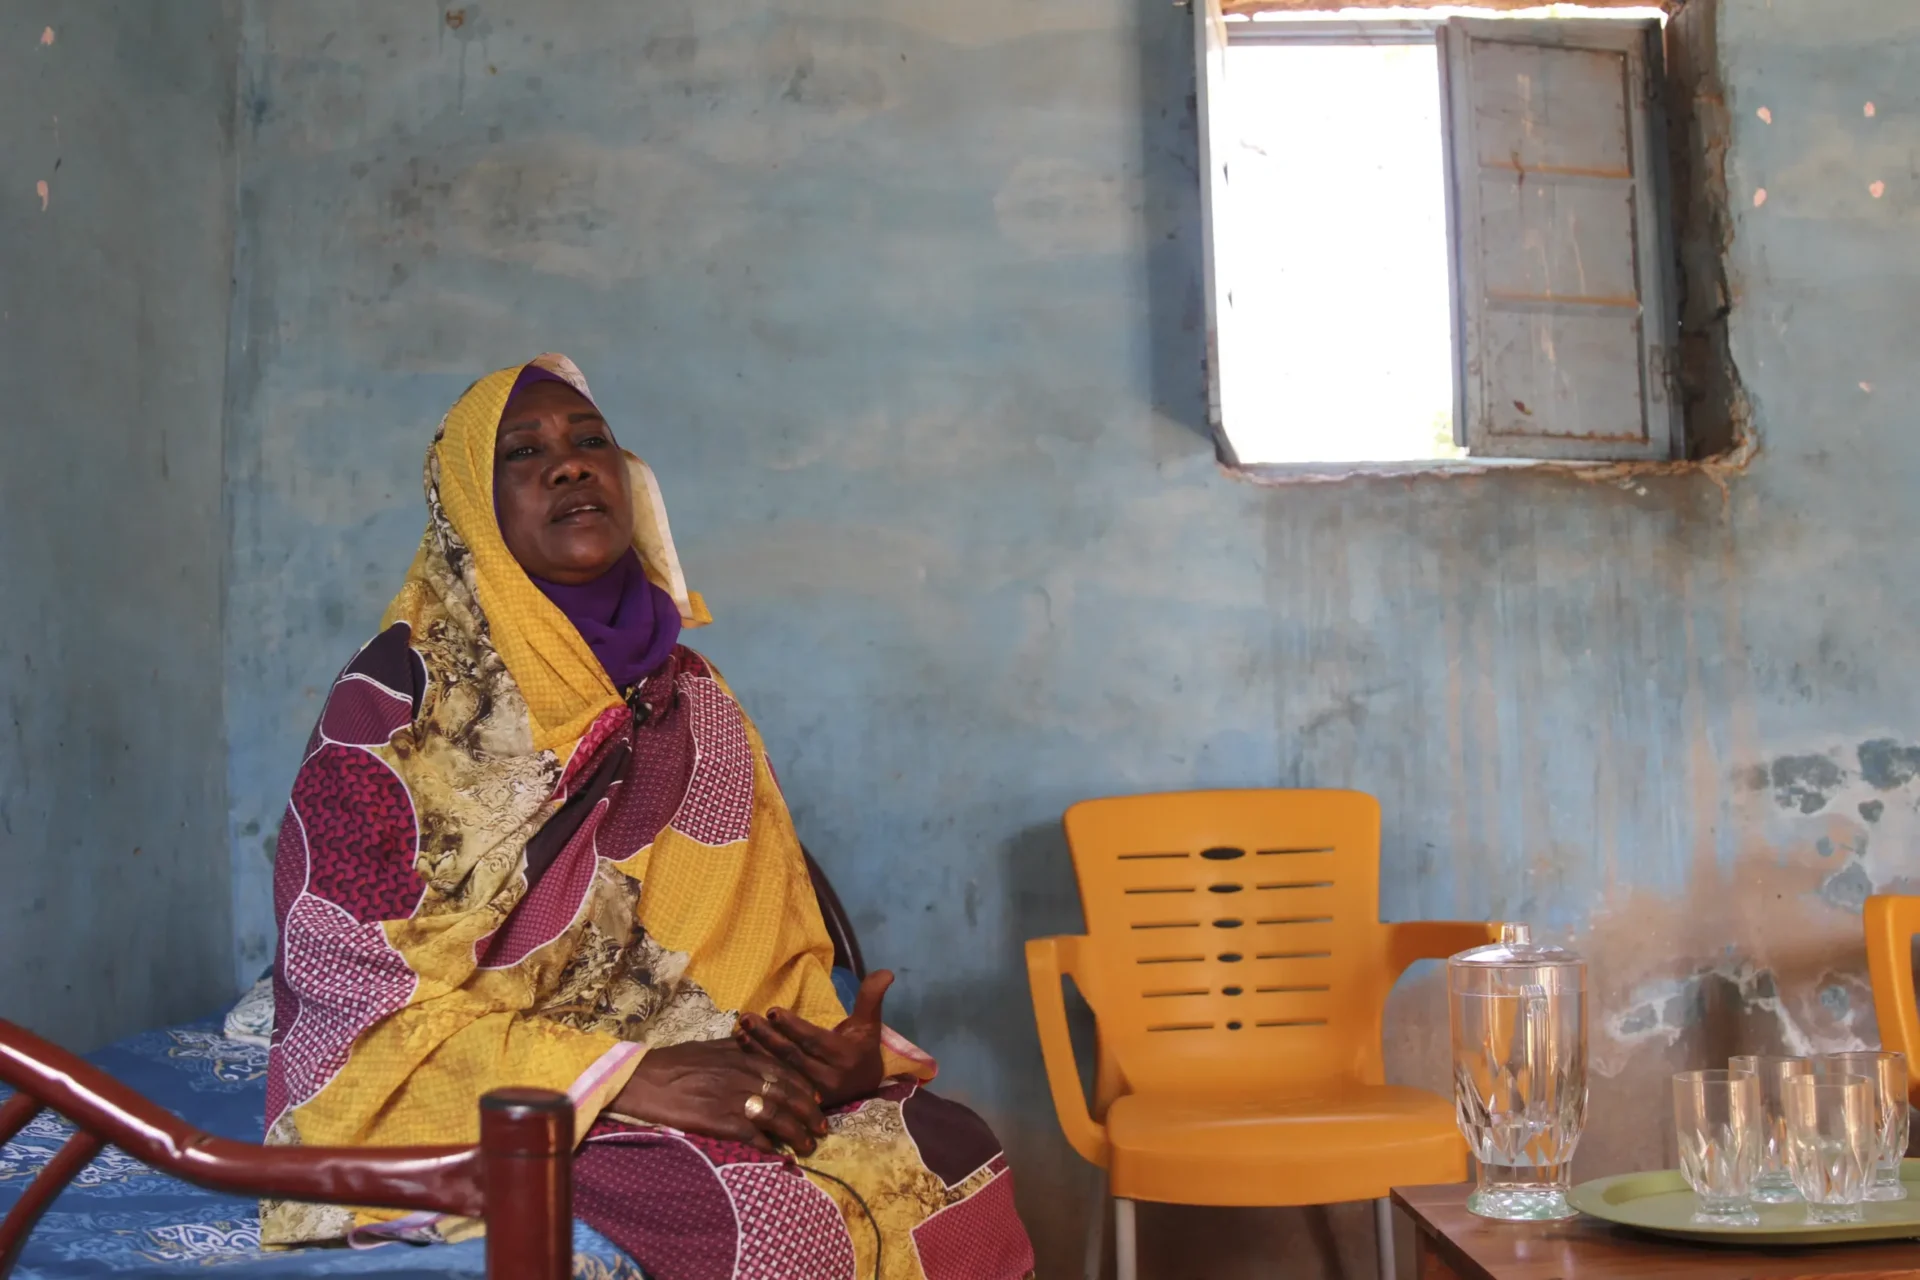 El pico de enfermedades tropicales en Sudán refleja un sistema de salud deficiente